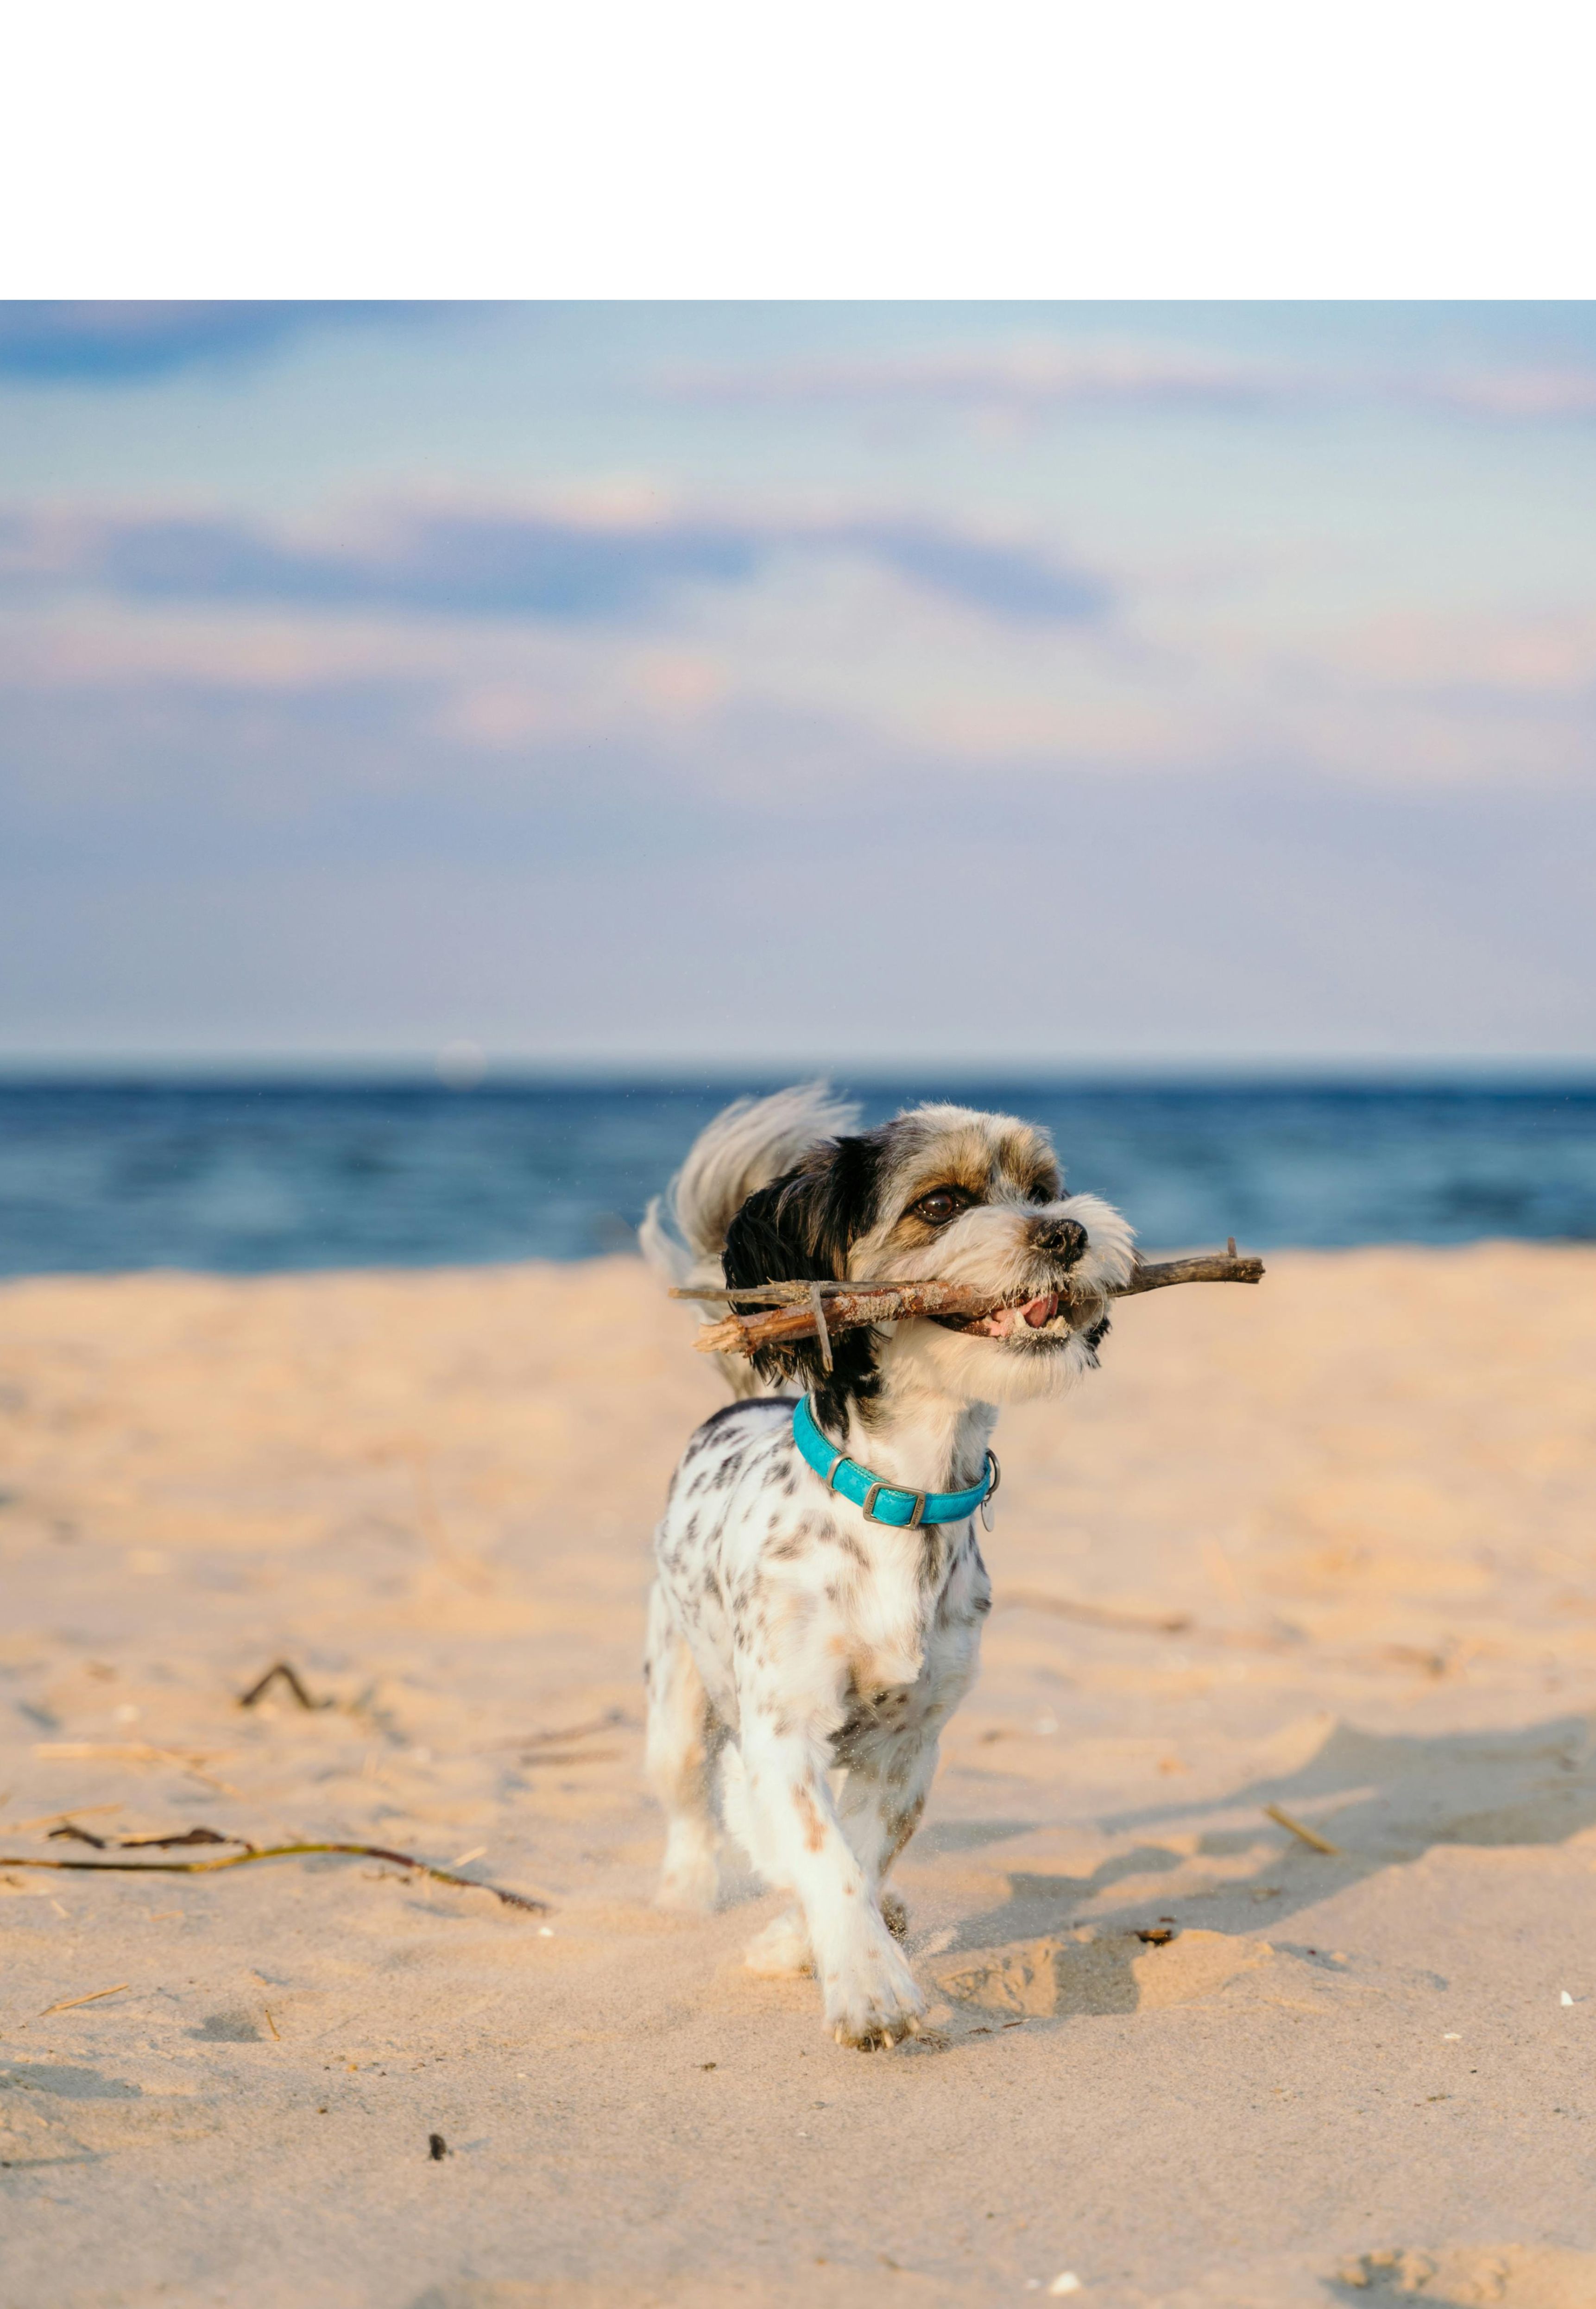 Perro jugando en la arena con una rama. Foto: Pexels/Damian Barczak